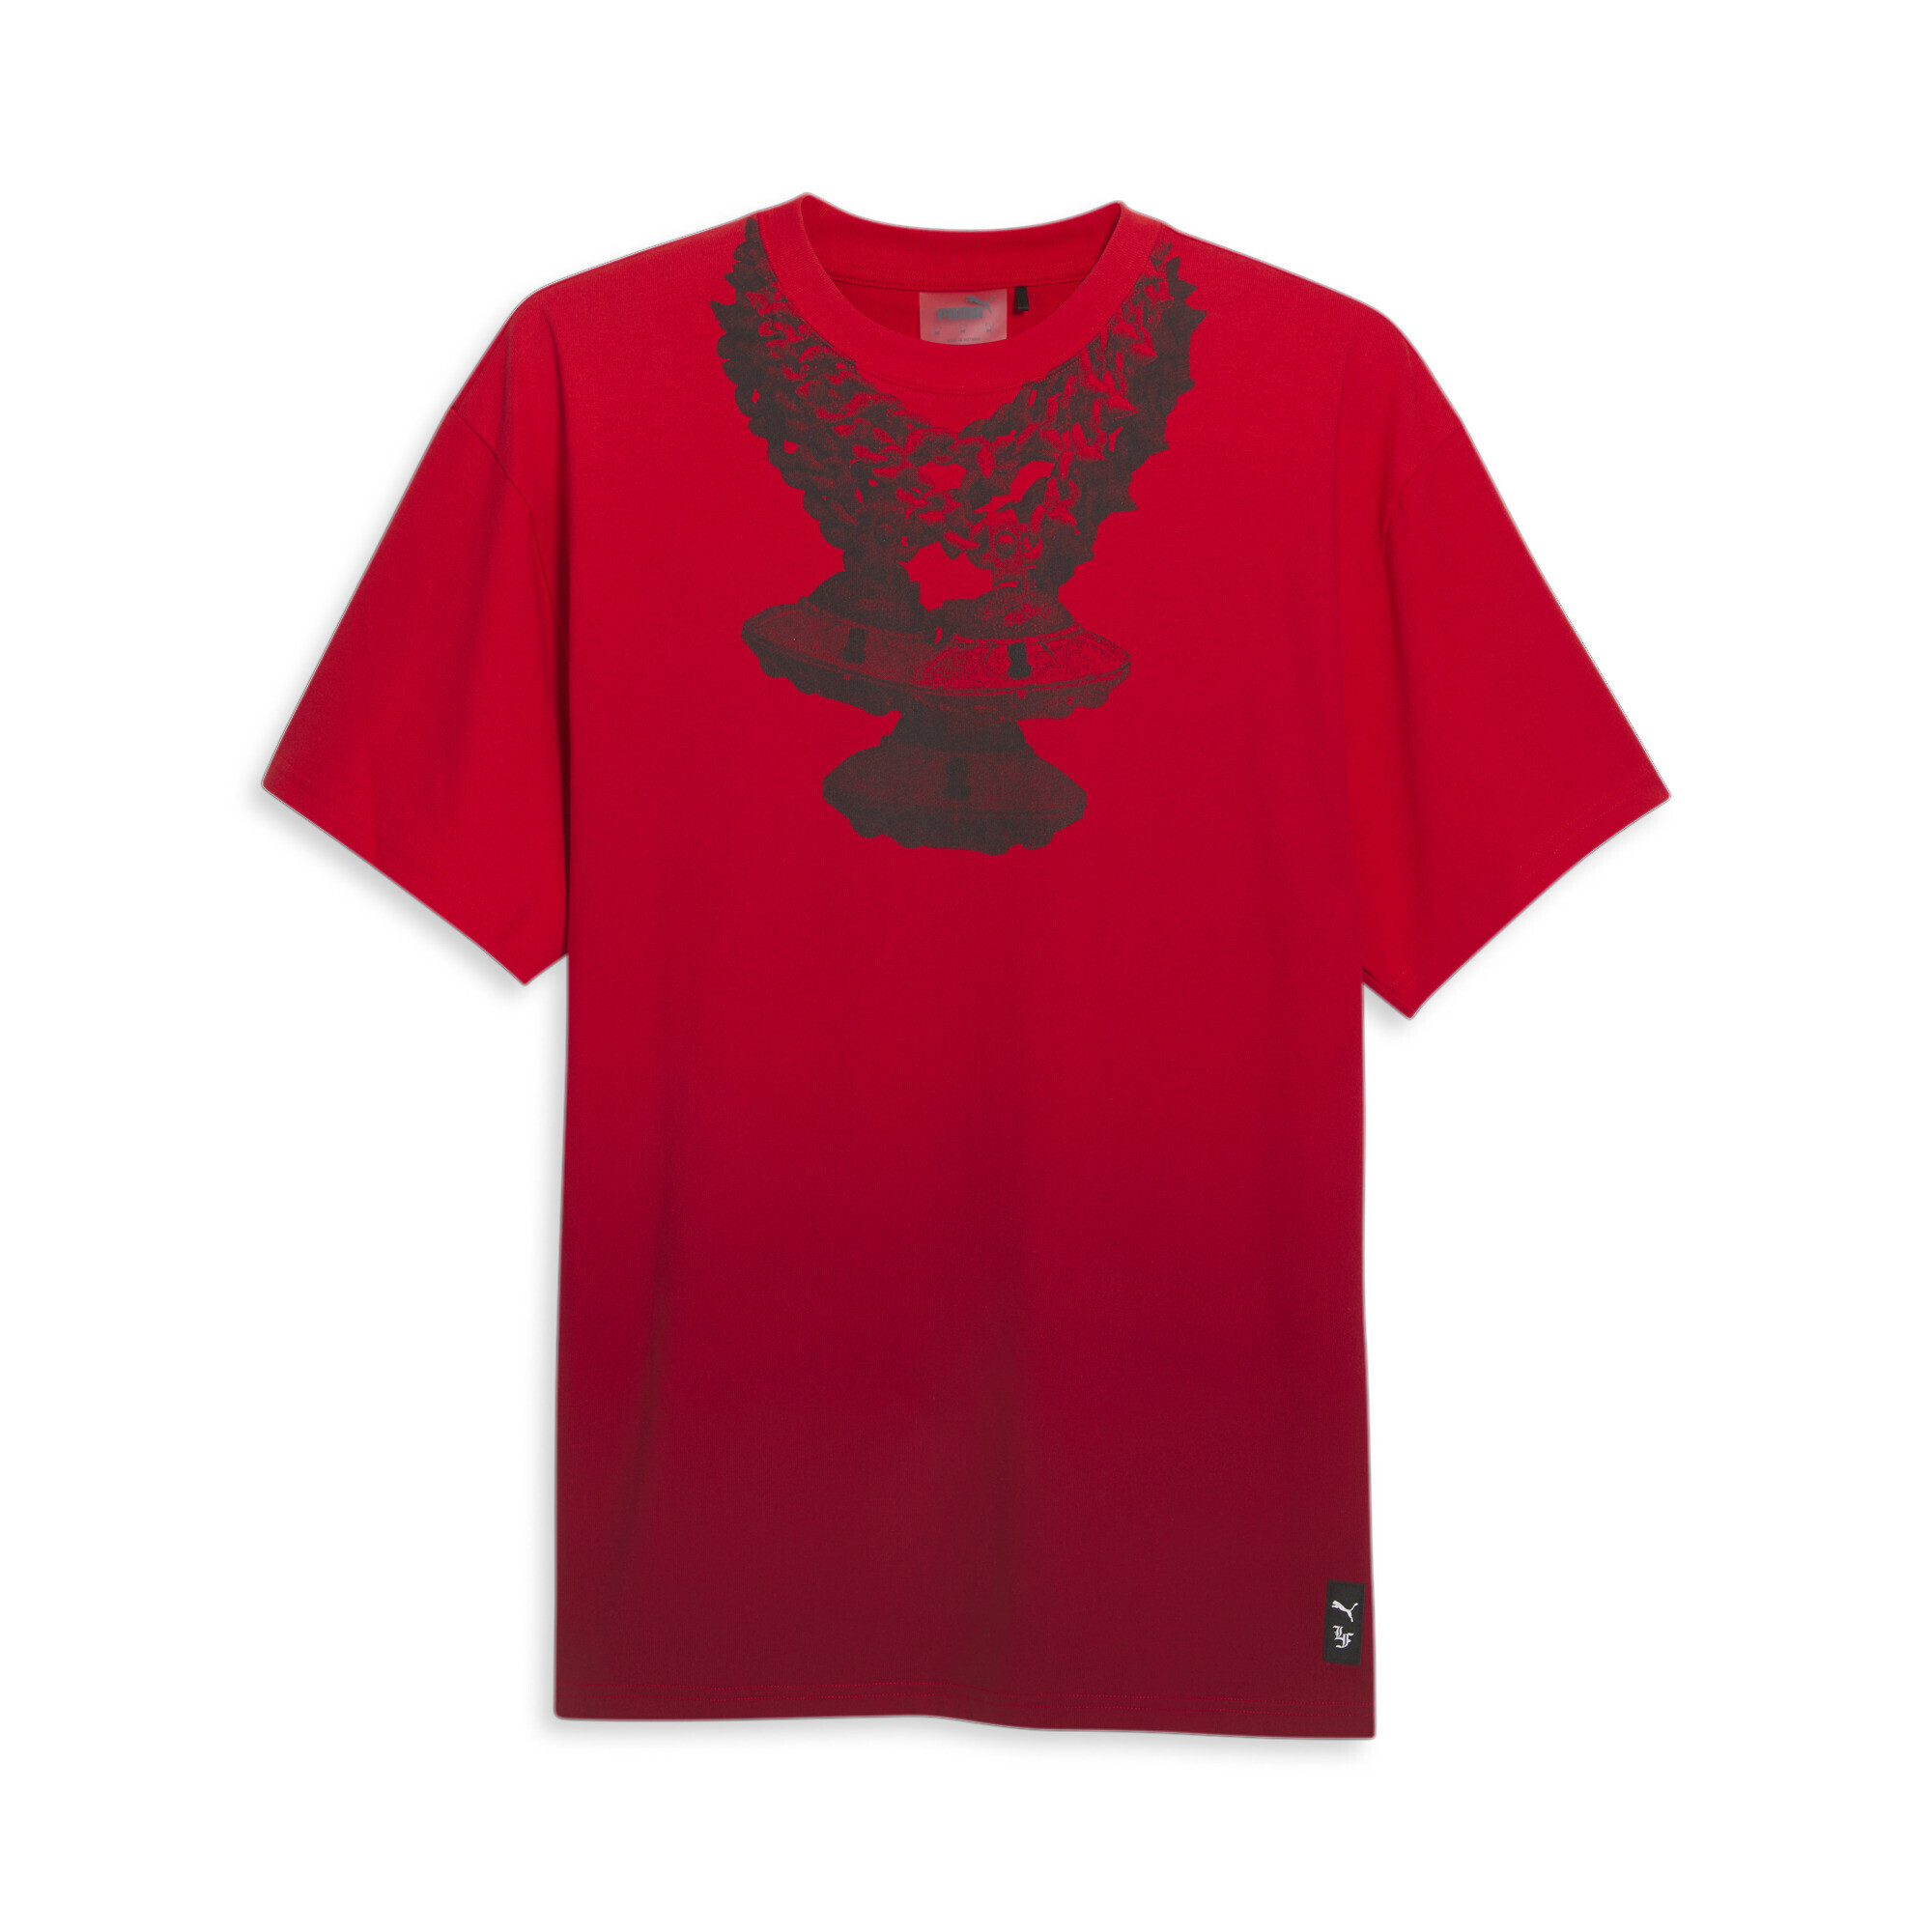 Men's PUMA X LAFRANCÃ T-Shirt In Red, Size 2XL